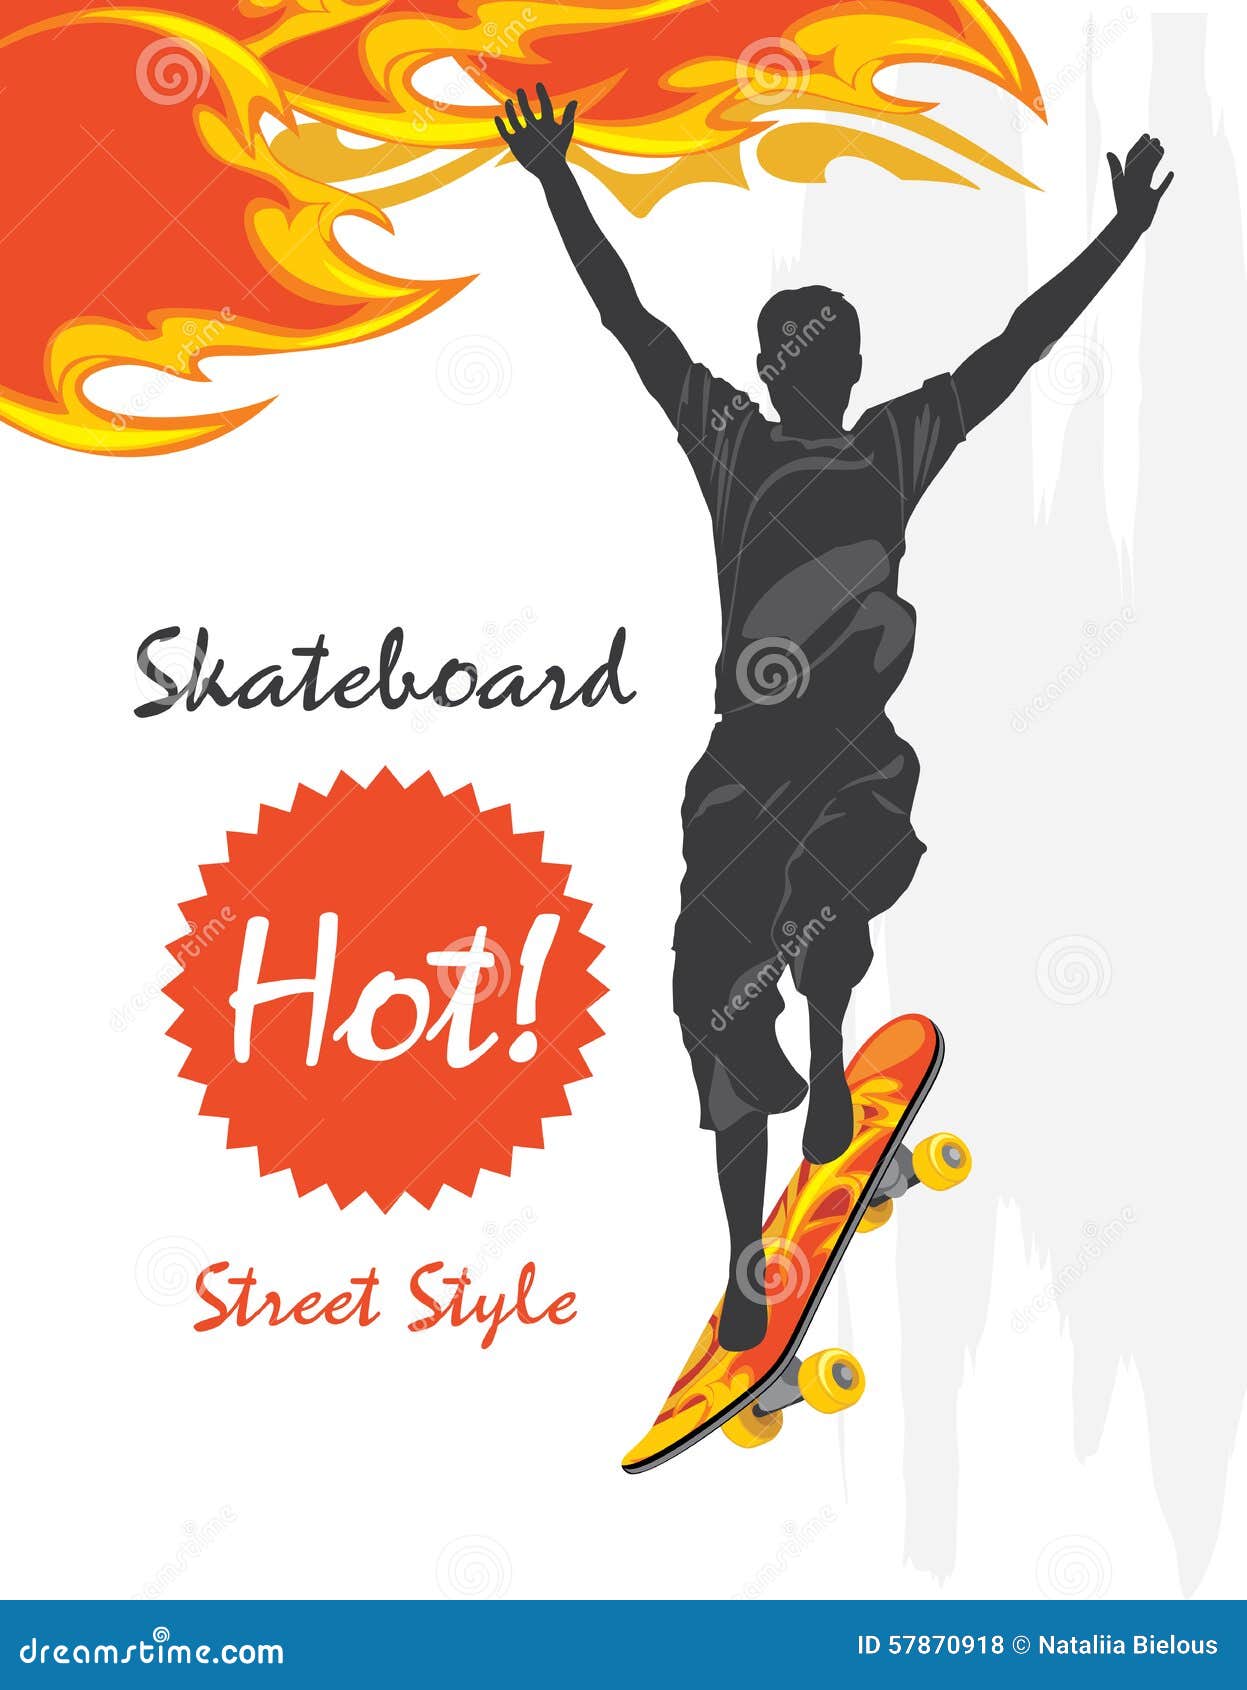 skateboard. street style